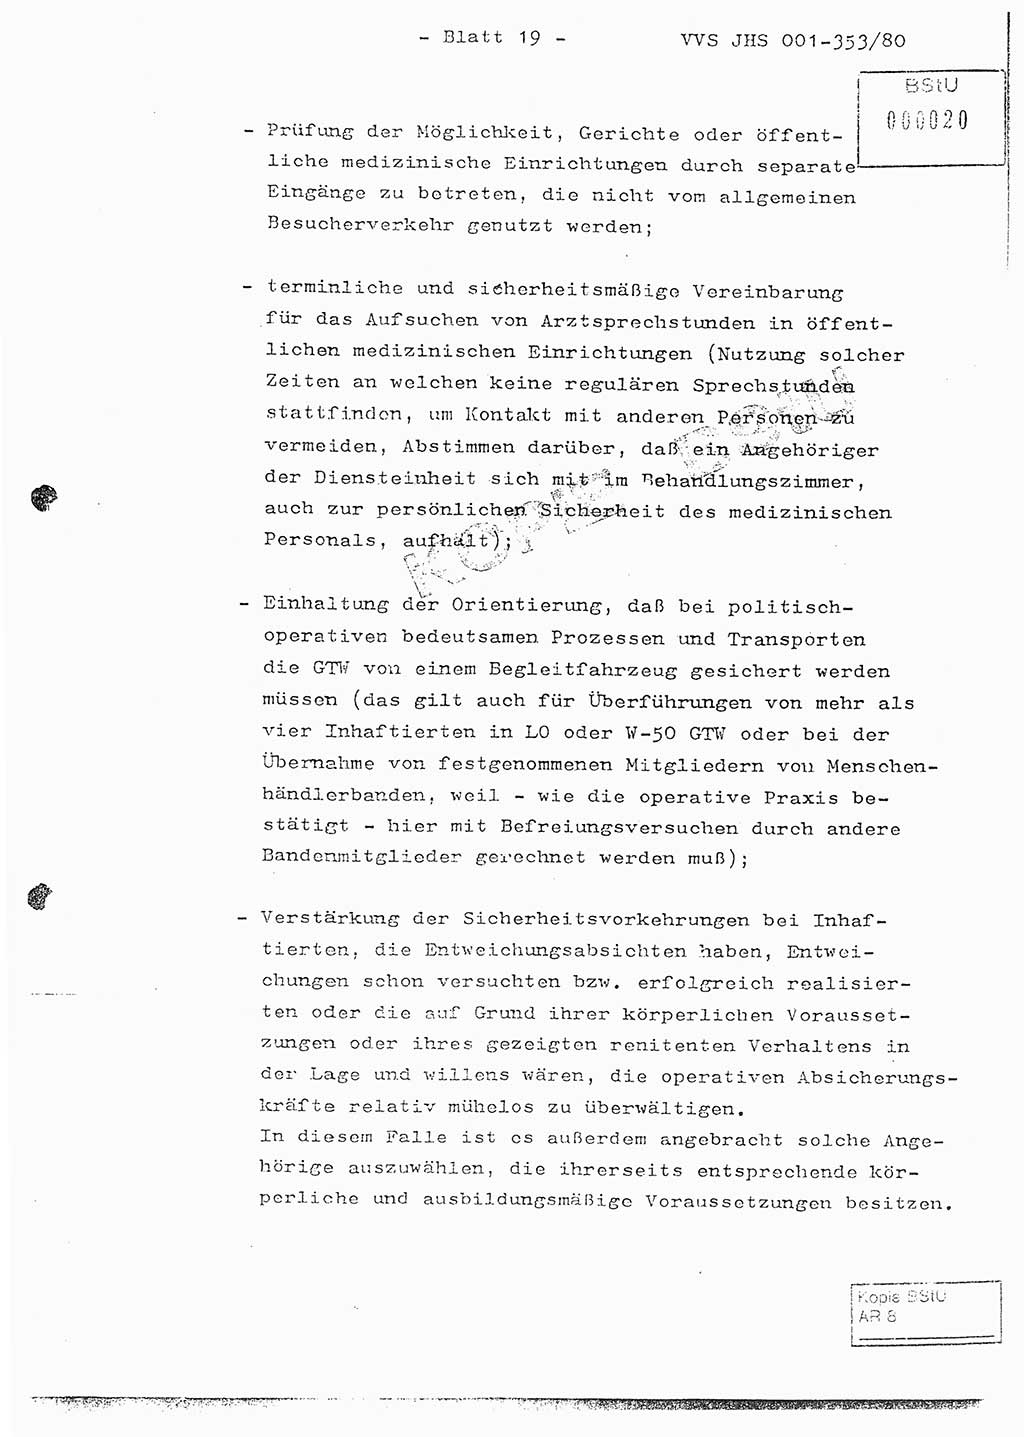 Diplomarbeit Hauptmann Joachim Klaumünzner (Abt. ⅩⅣ), Ministerium für Staatssicherheit (MfS) [Deutsche Demokratische Republik (DDR)], Juristische Hochschule (JHS), Vertrauliche Verschlußsache (VVS) o001-353/80, Potsdam 1980, Blatt 19 (Dipl.-Arb. MfS DDR JHS VVS o001-353/80 1980, Bl. 19)